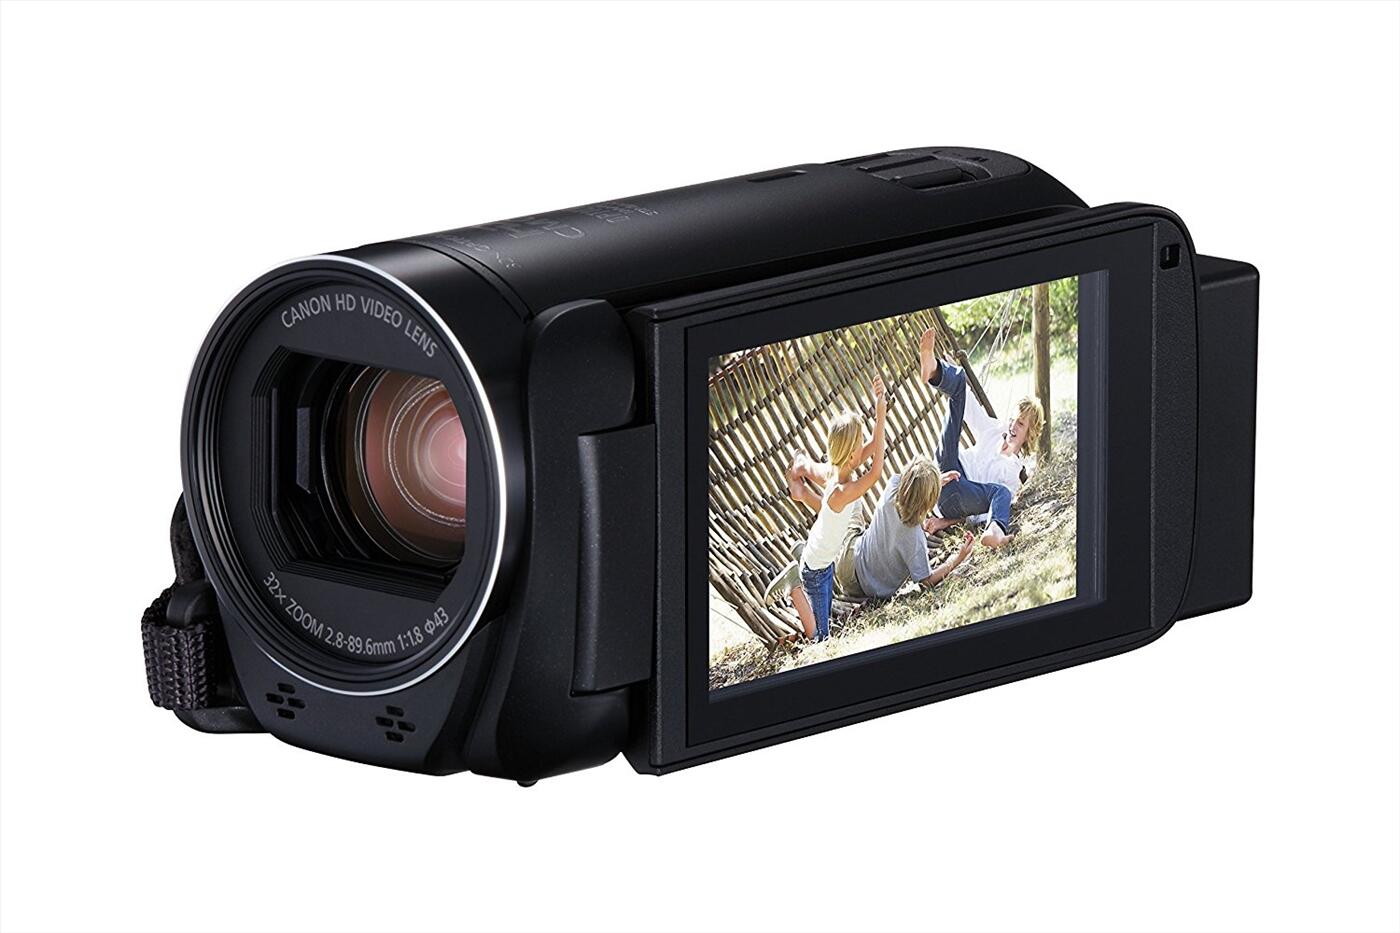 Máy quay Canon LEGRIA HF R806, VIXIA HF R800 full HD, tặng thẻ nhớ 8GB, túi đựng, chân máy quay...